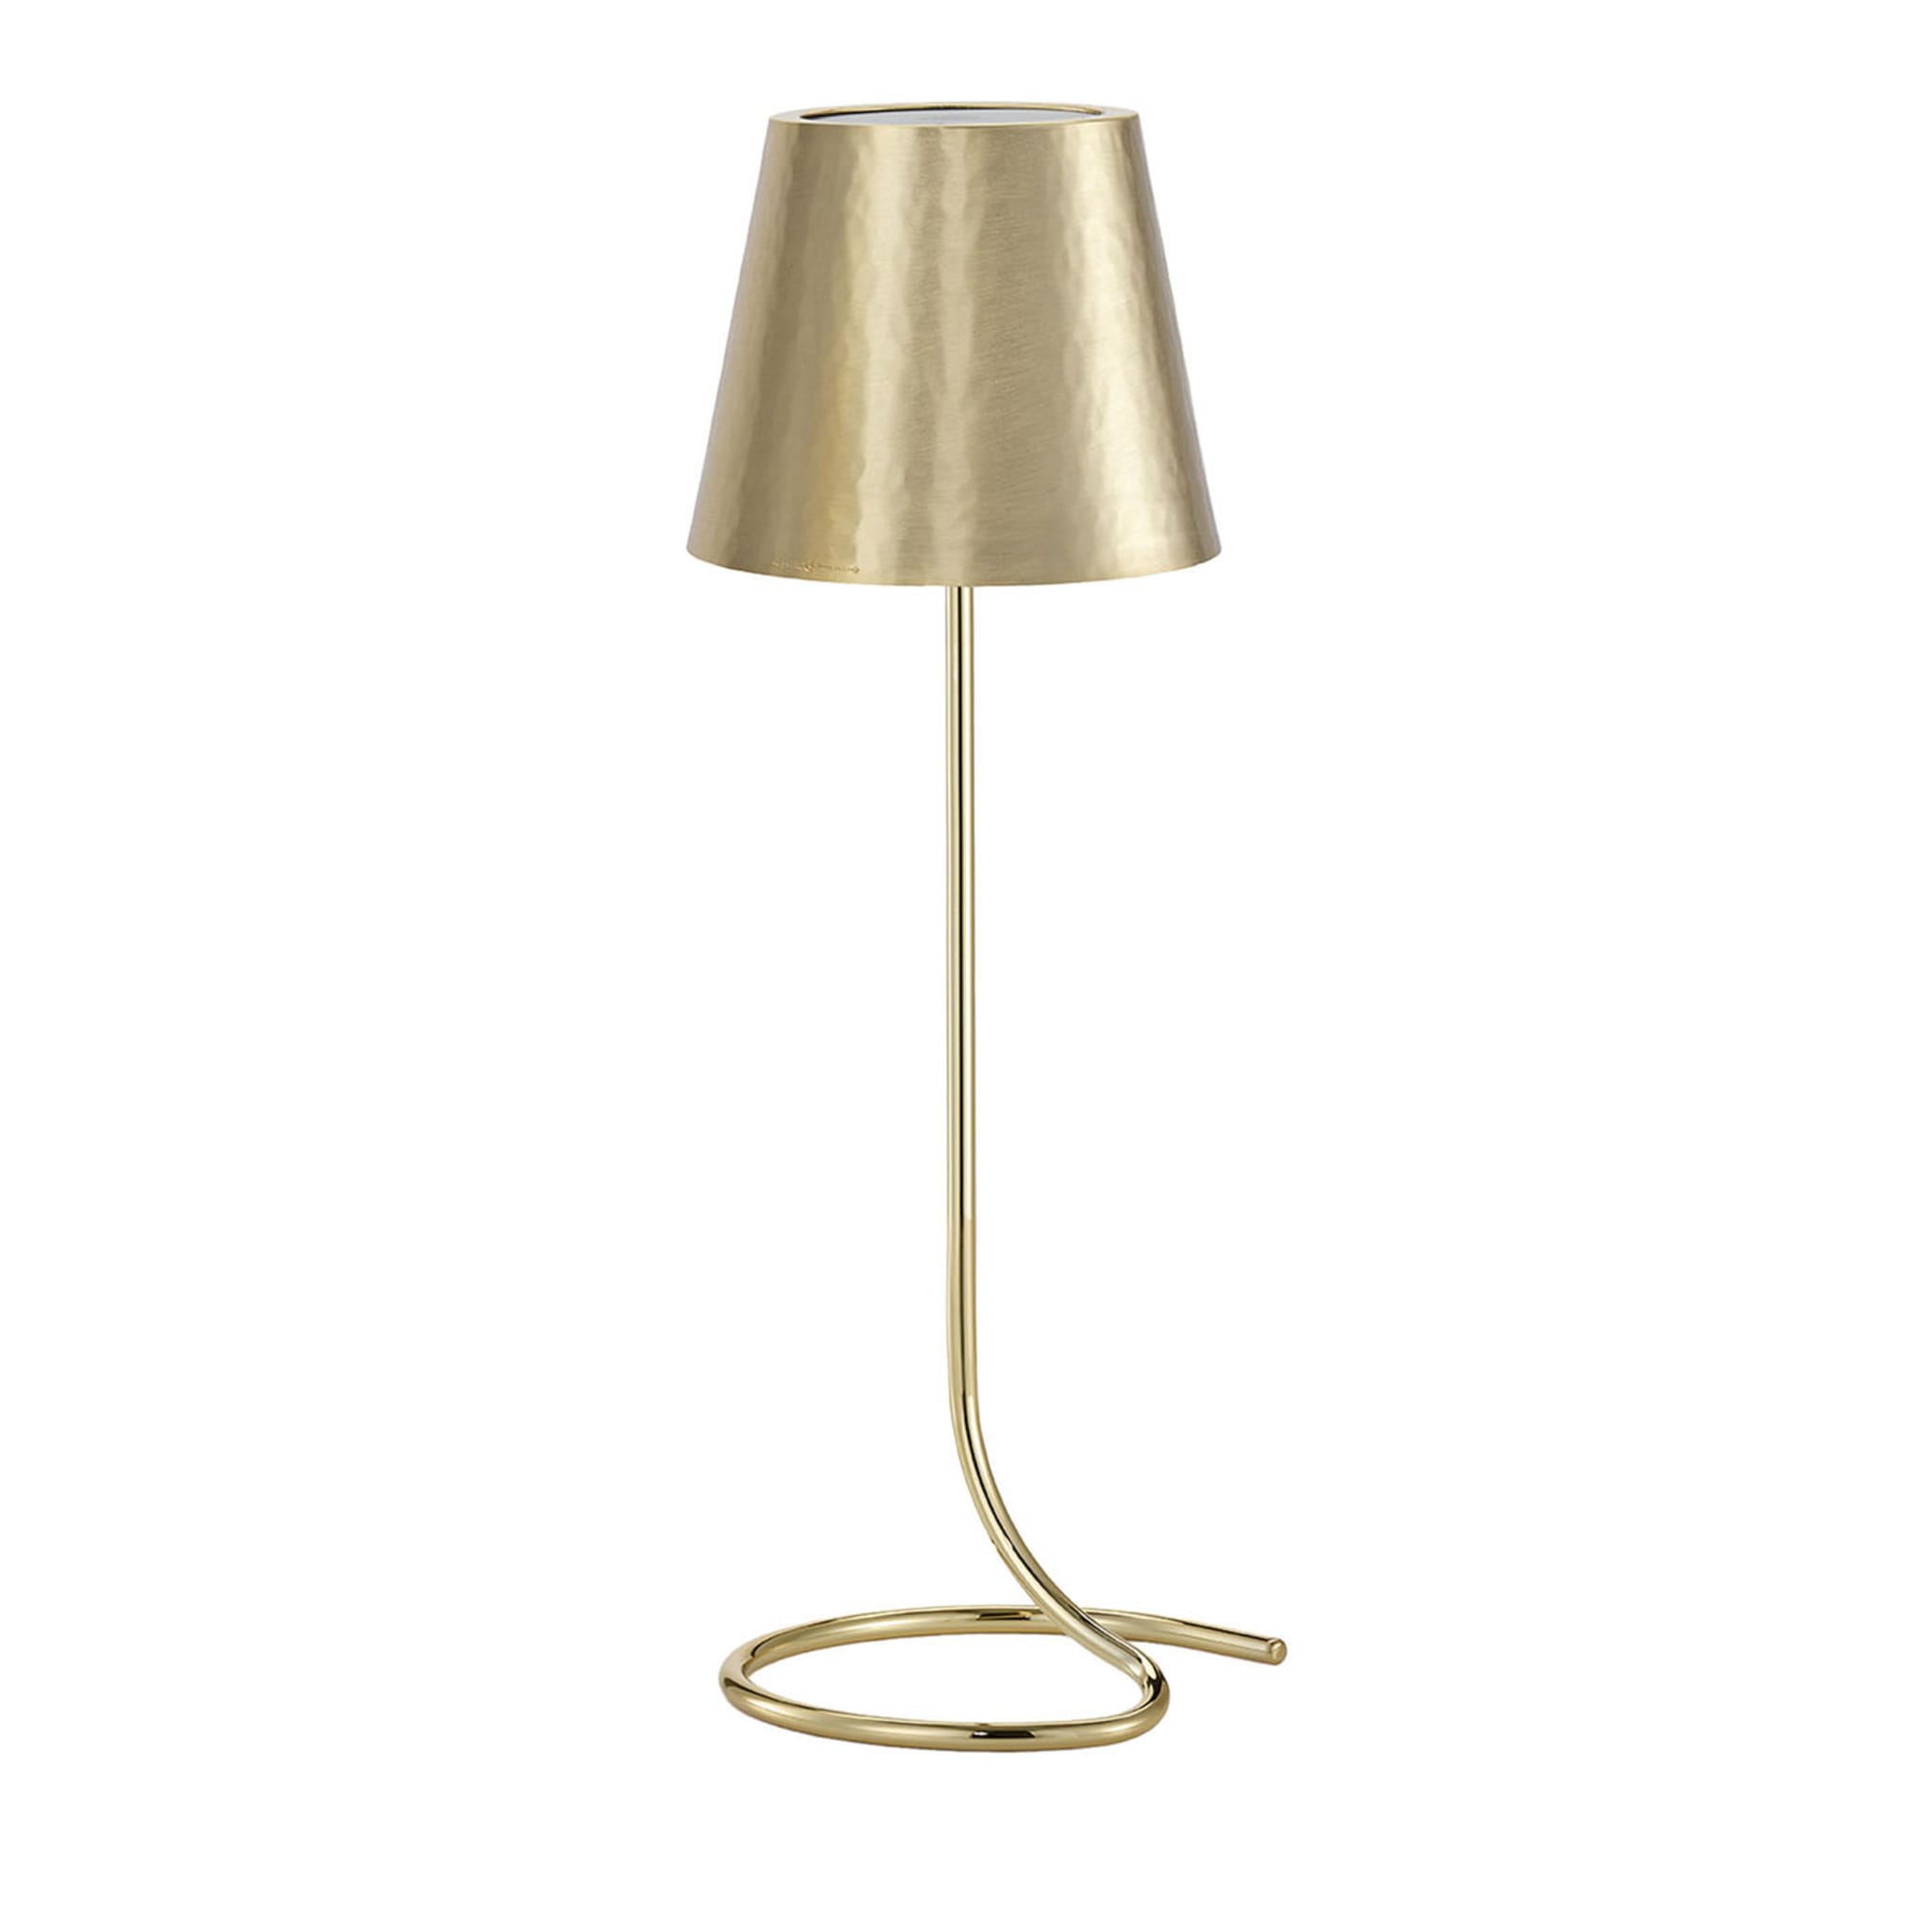 Golden Lamp #2 by Itamar Harari - Main view